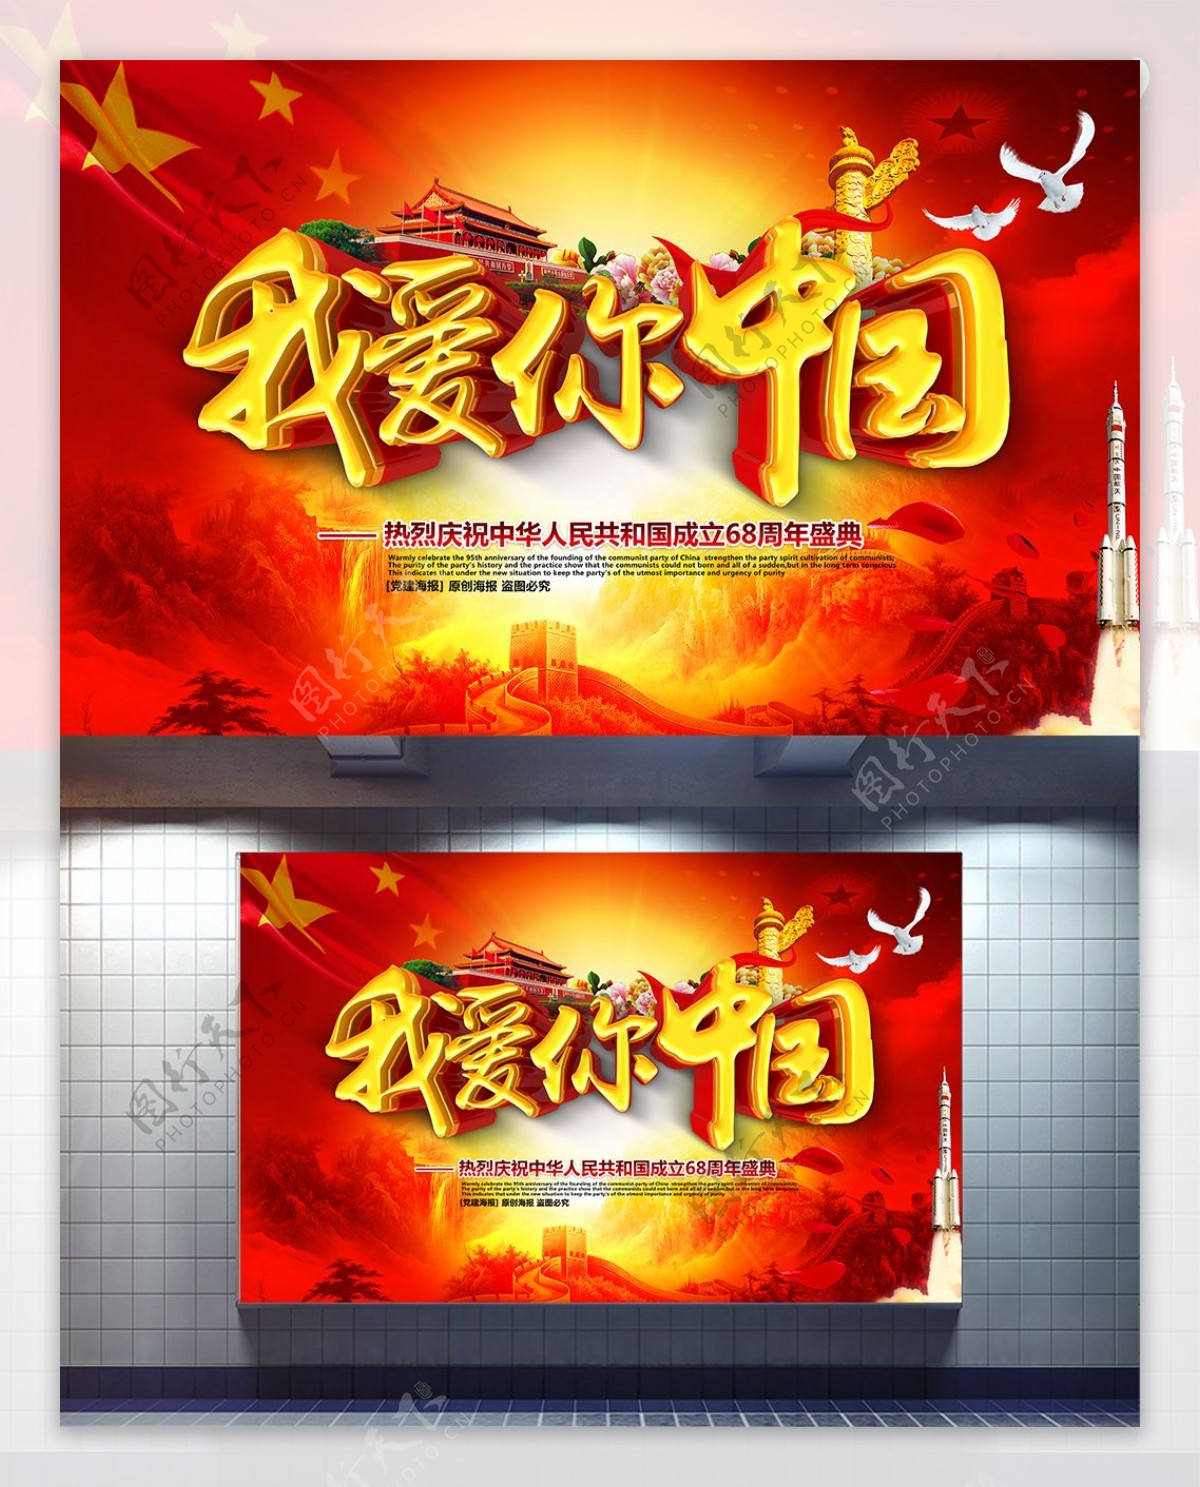 我爱你中国红色大气国庆节党建海报设计